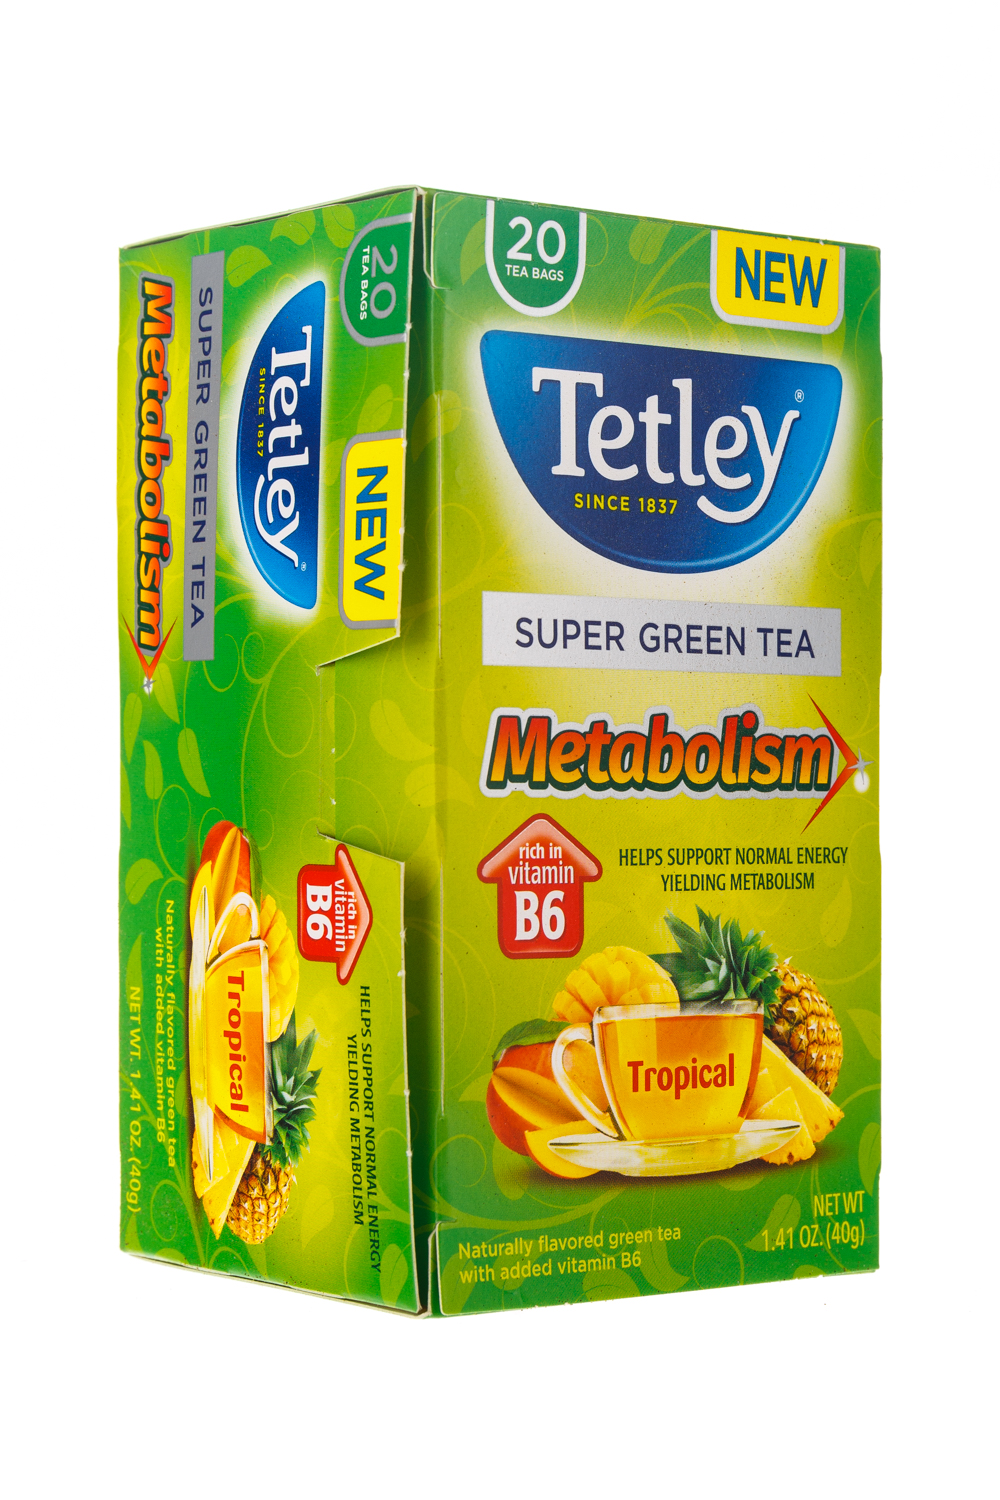 Super Green Tea: Metabolism